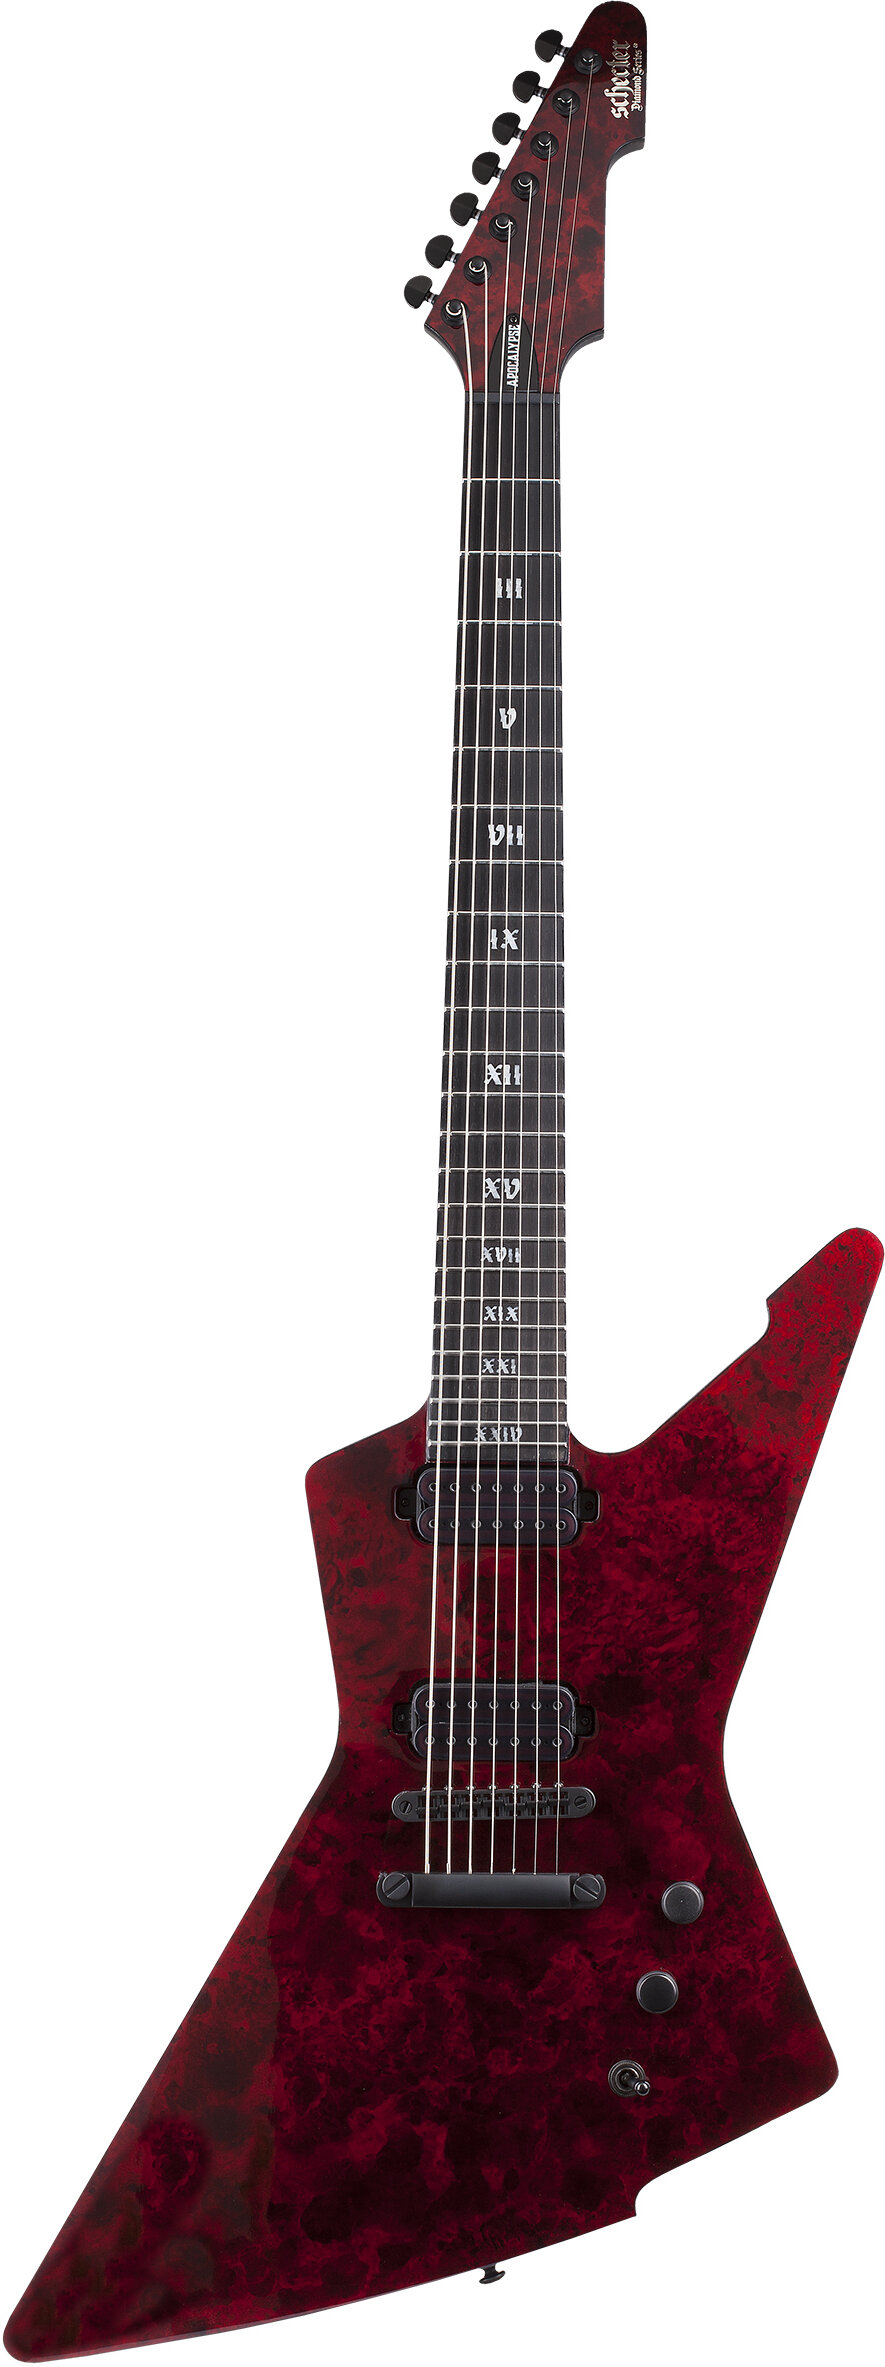 Schecter E-7 Apocalypse Electric Guitar Red Reign -  1311